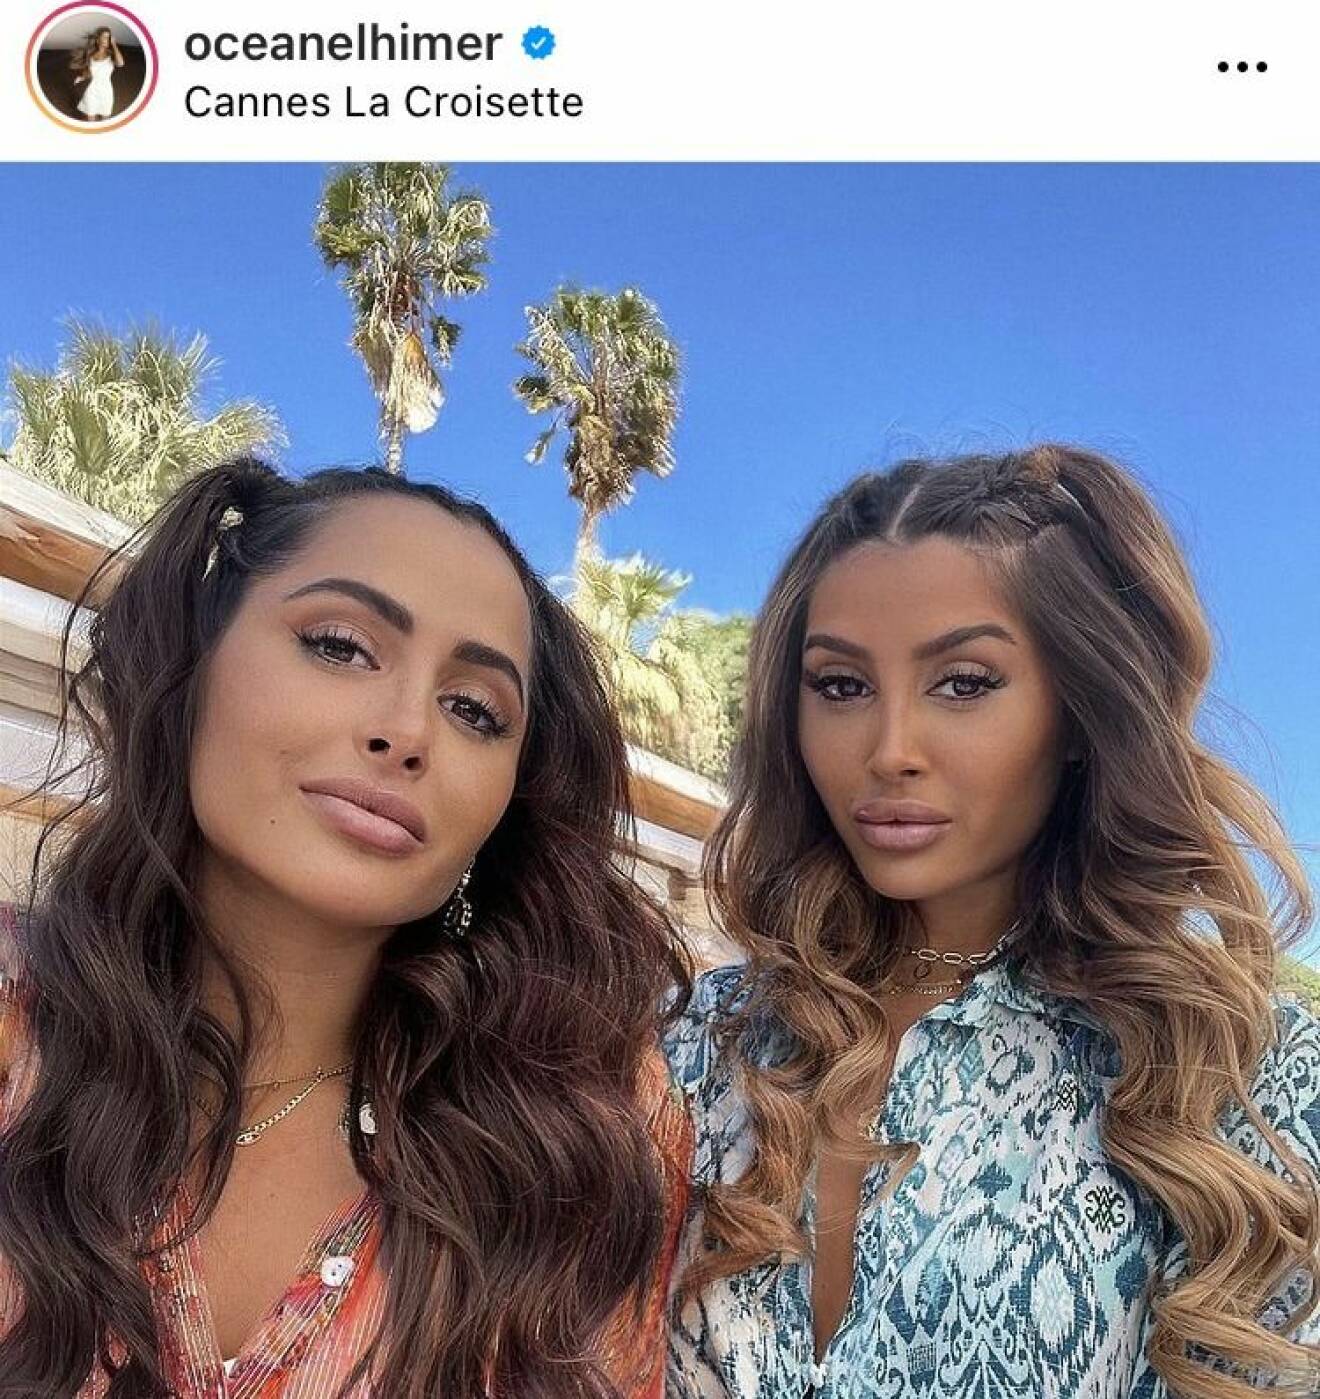 Systrarna Marine och Oceane el Himer är populära på Instagram.